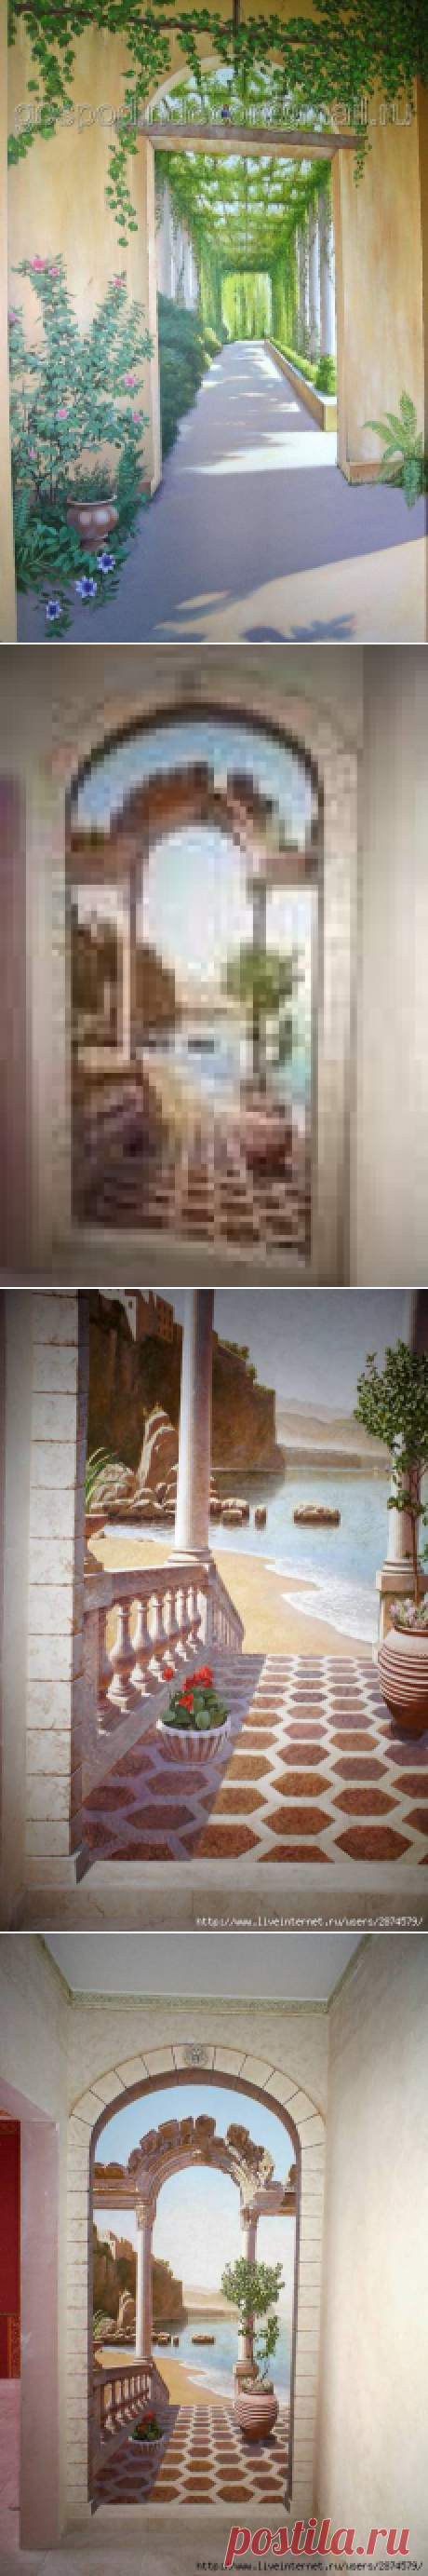 Роспись стен с использованием перспективы